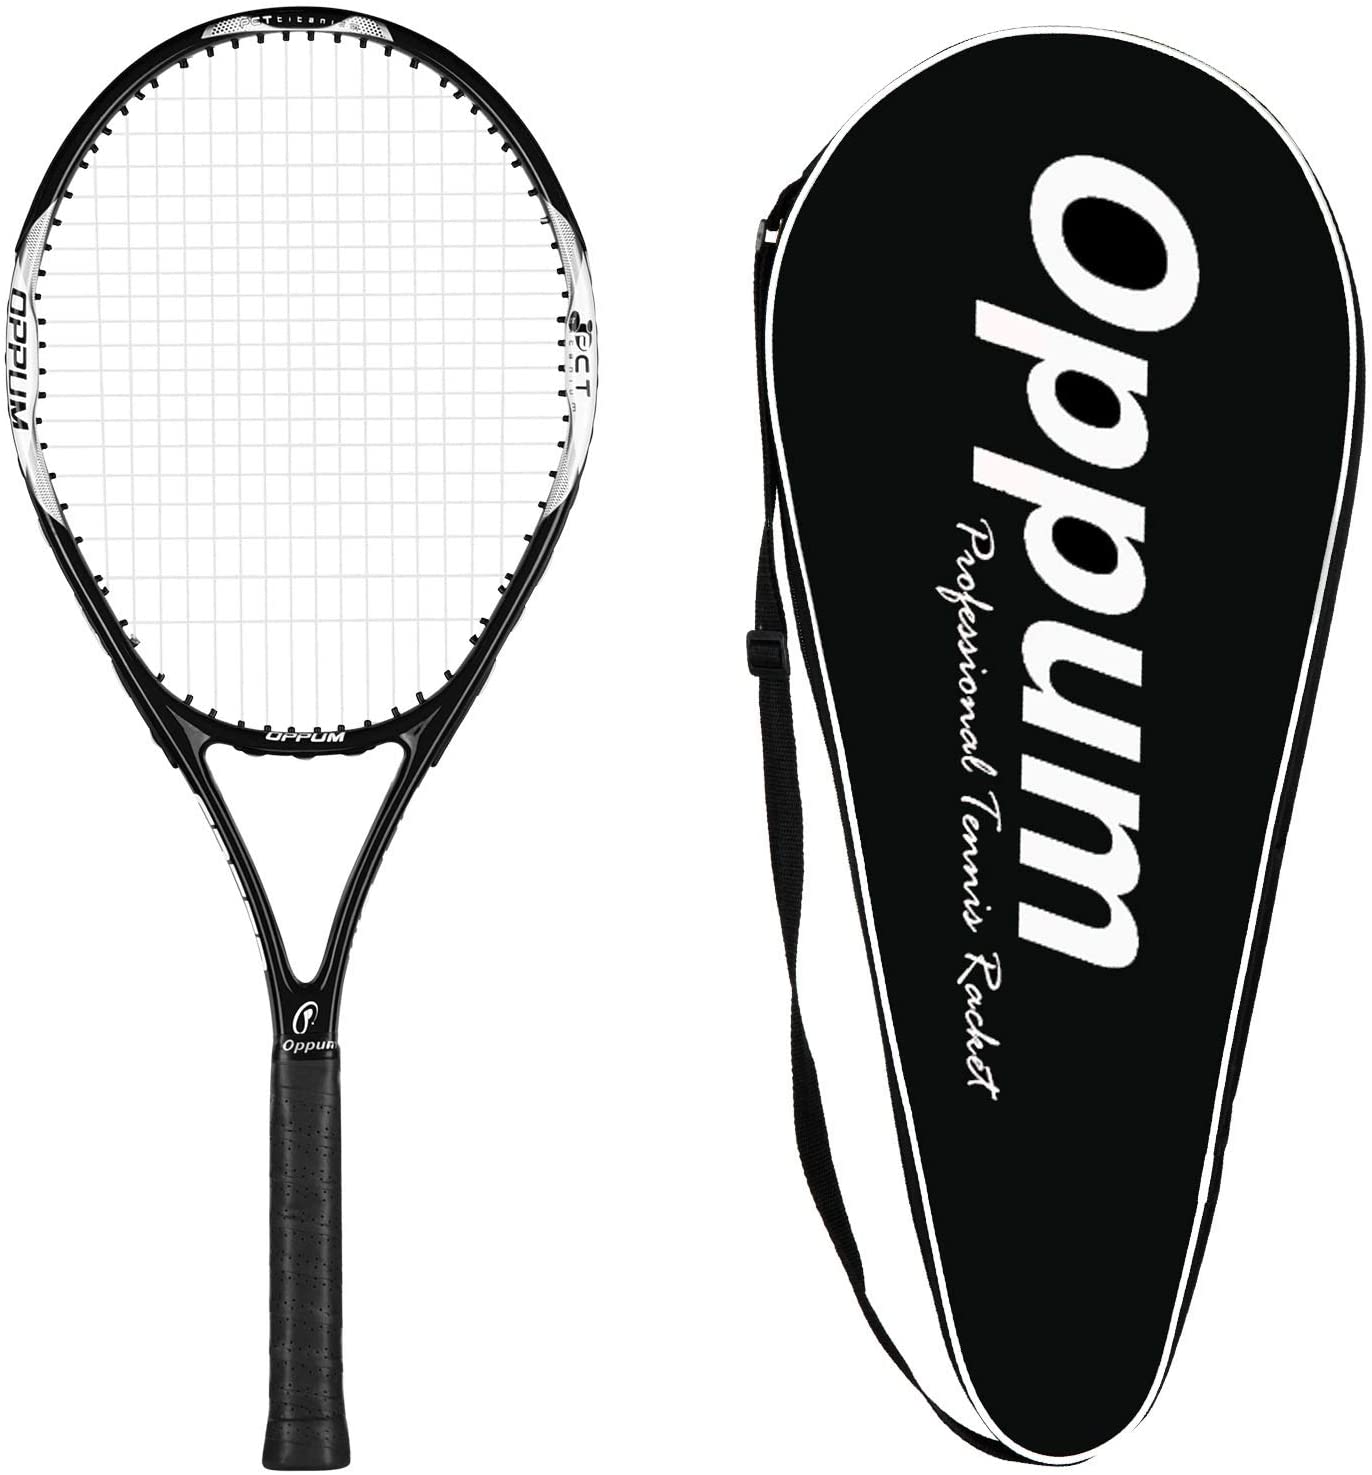 OPPUM Tennis Racket for Beginners